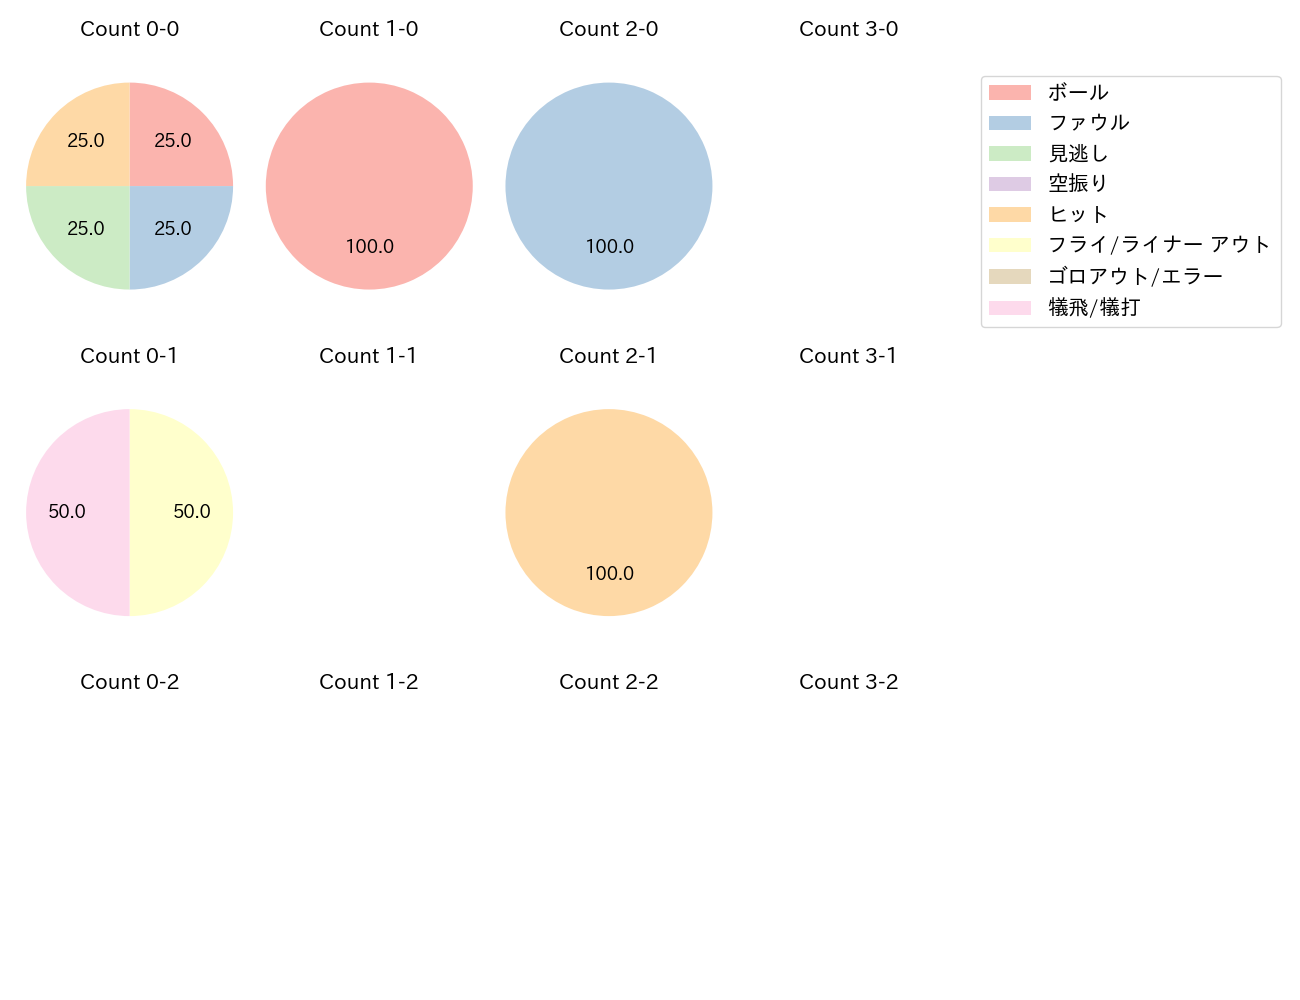 髙松 渡の球数分布(2021年8月)